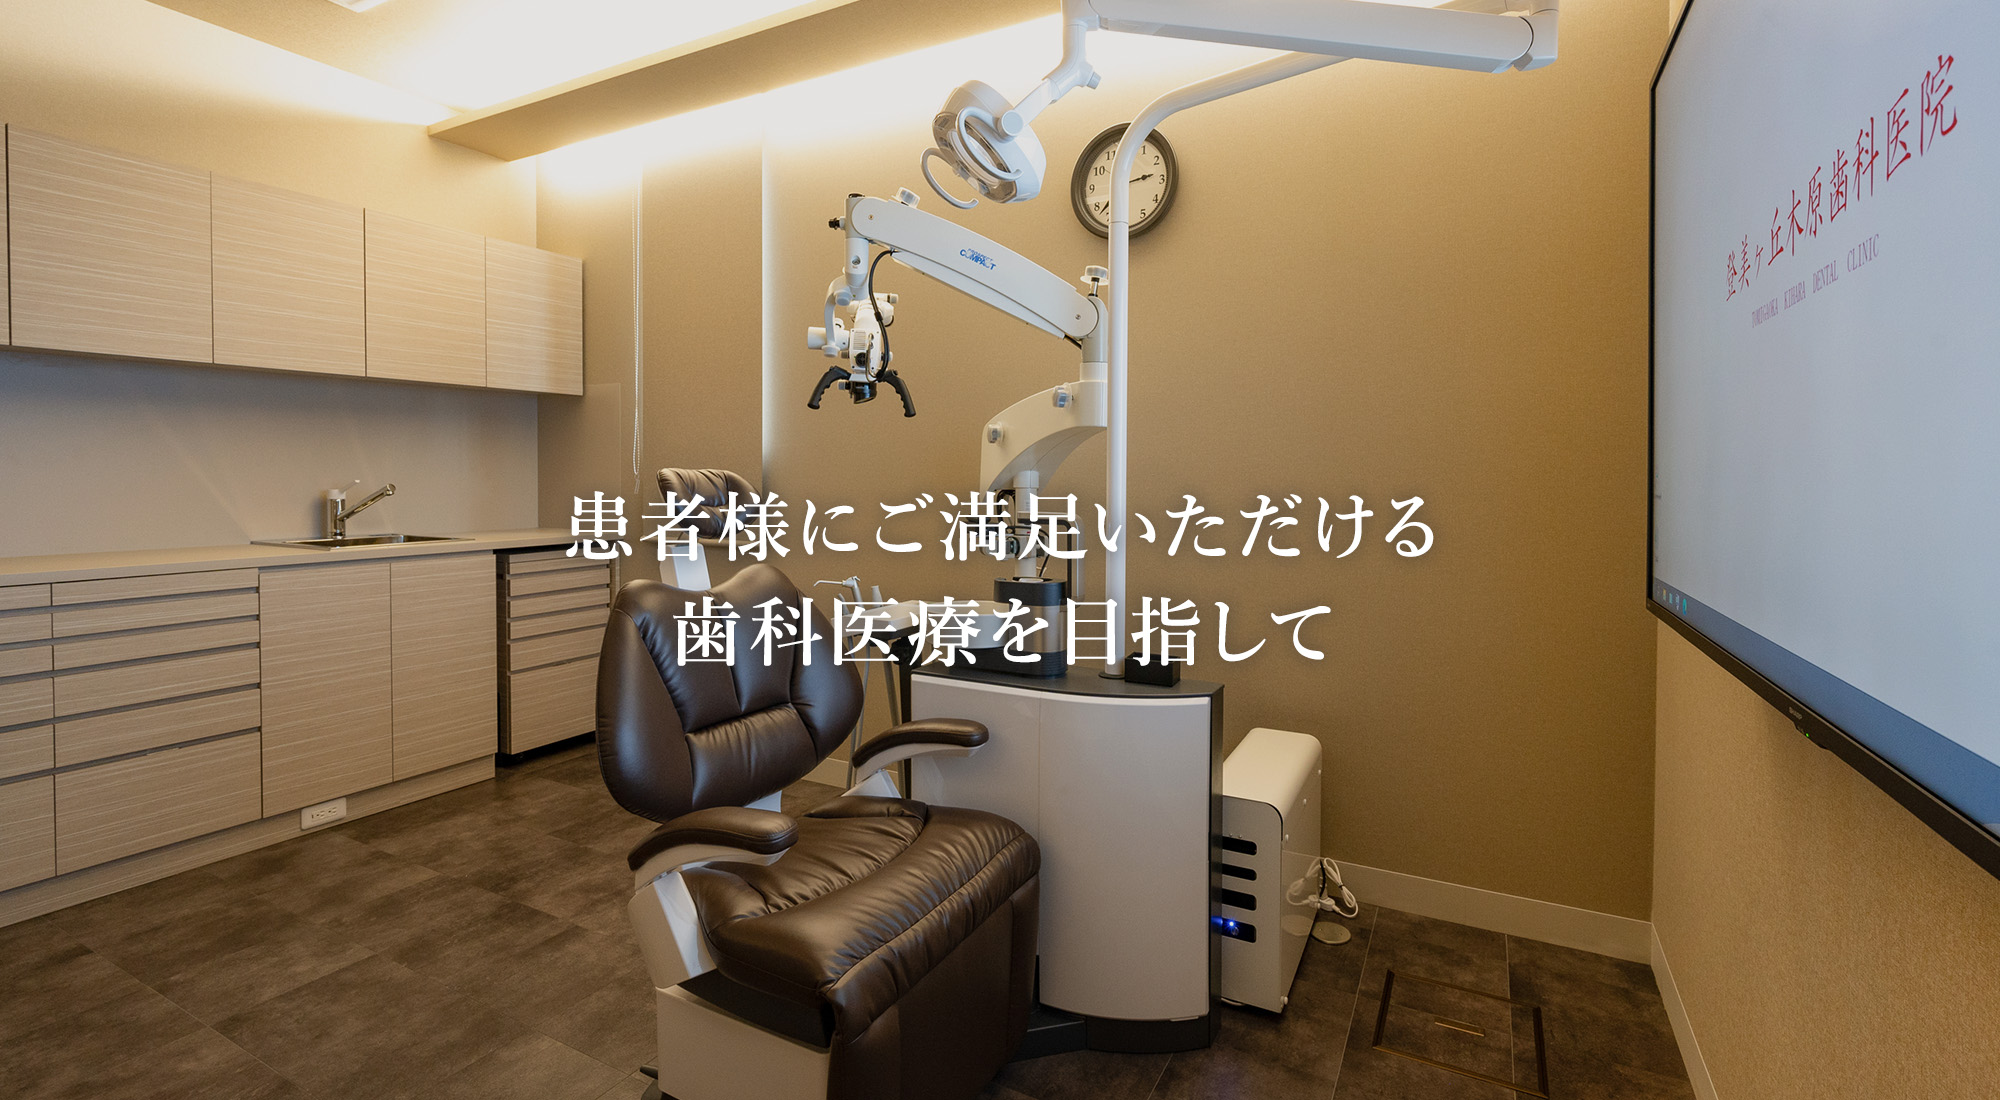 奈良市の歯医者の中で患者様にご満足いただける歯科医療を目指して